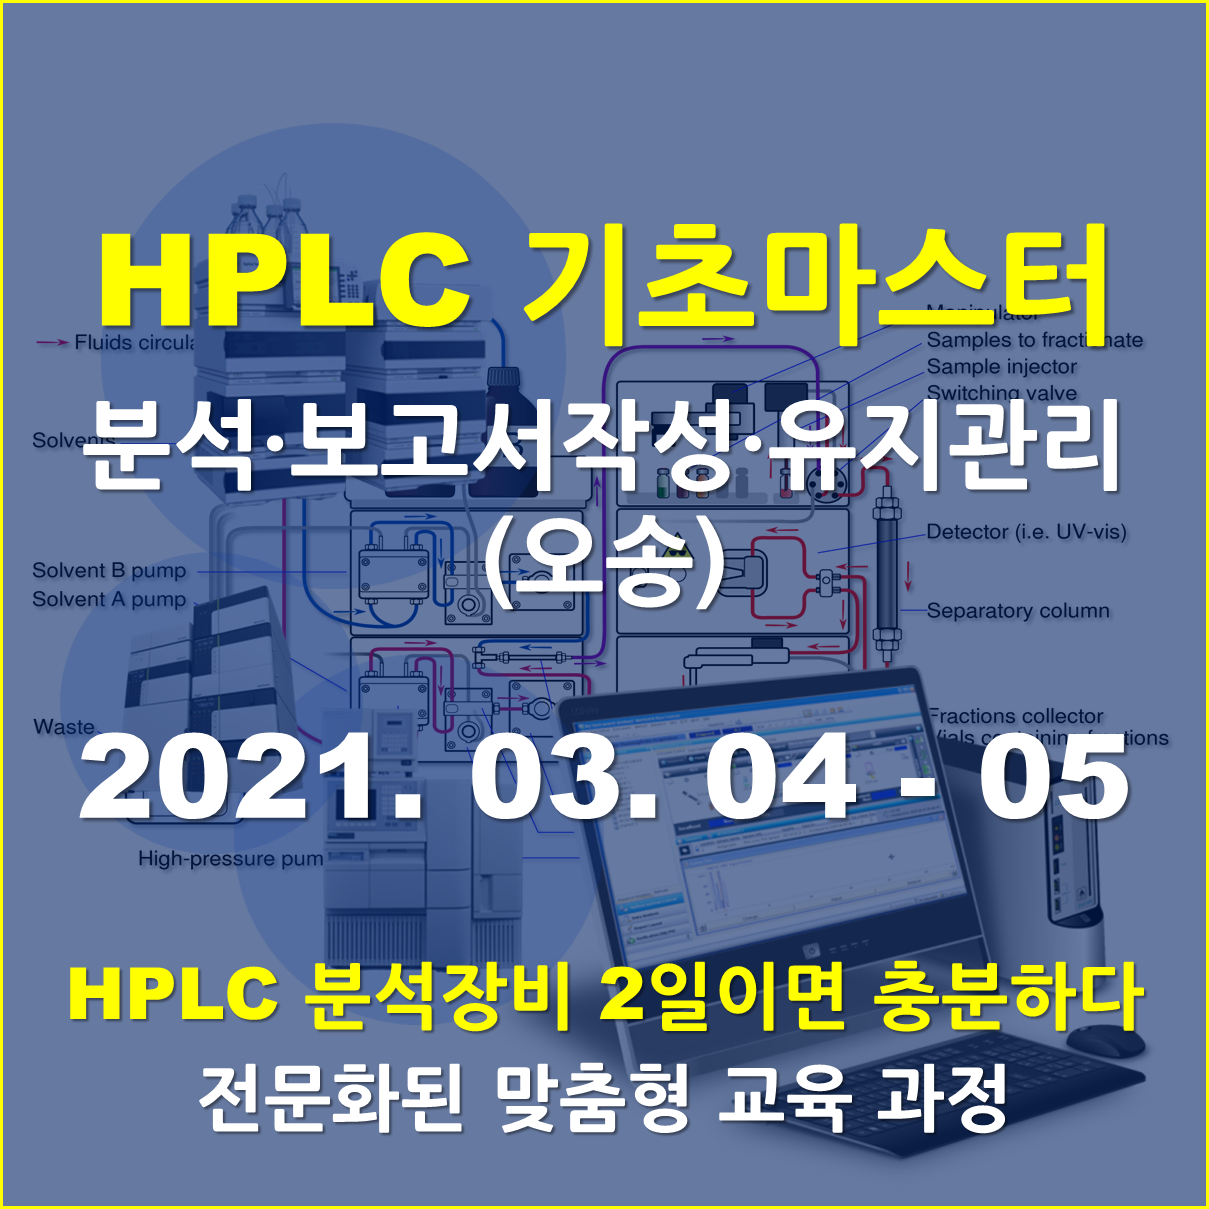 [오송교육장] HPLC 기초 마스터 - Agilent 1260사용(2일과정)